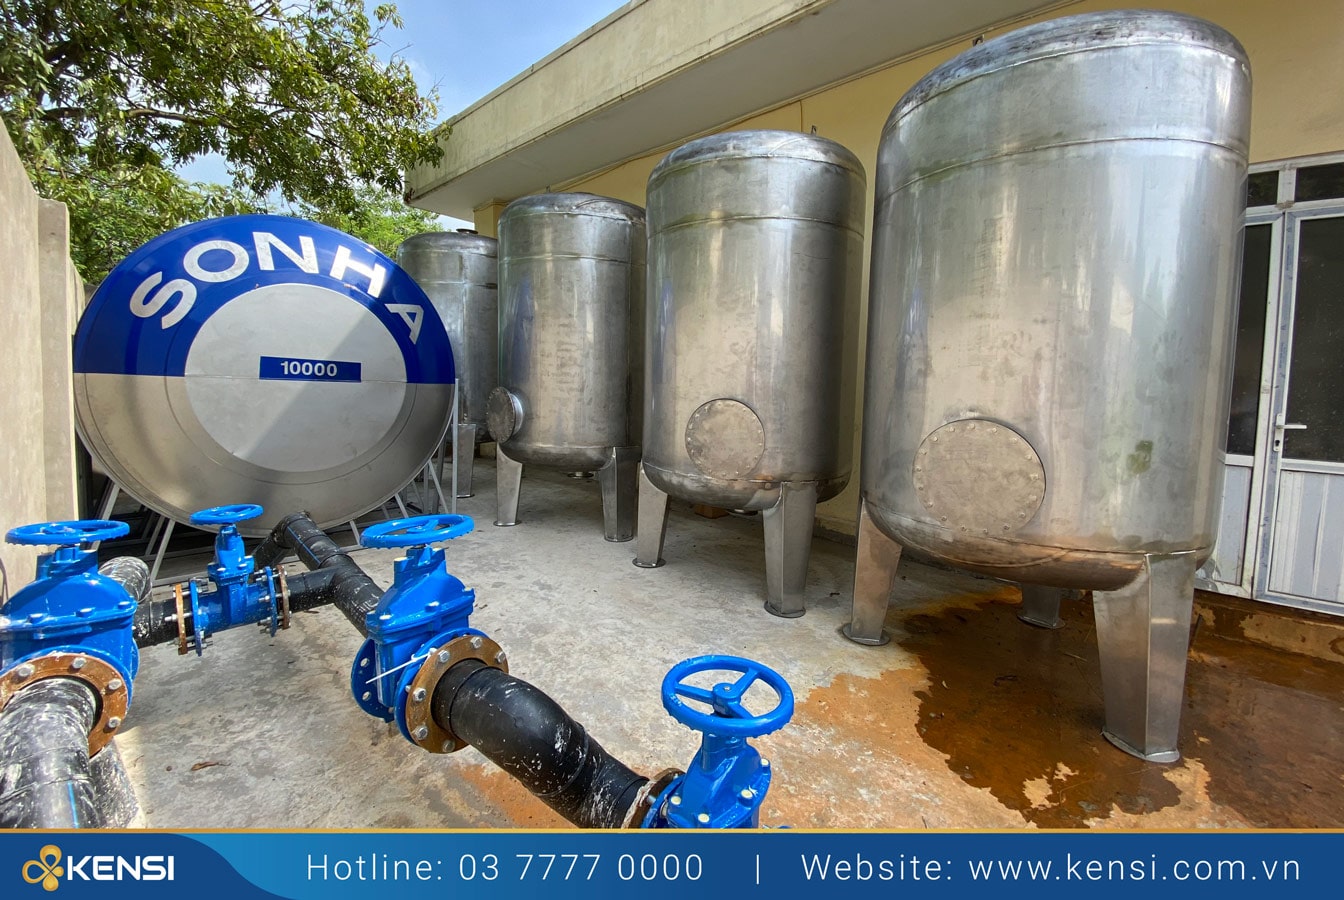 giải pháp lọc nước cấp cho khu công nghiệp